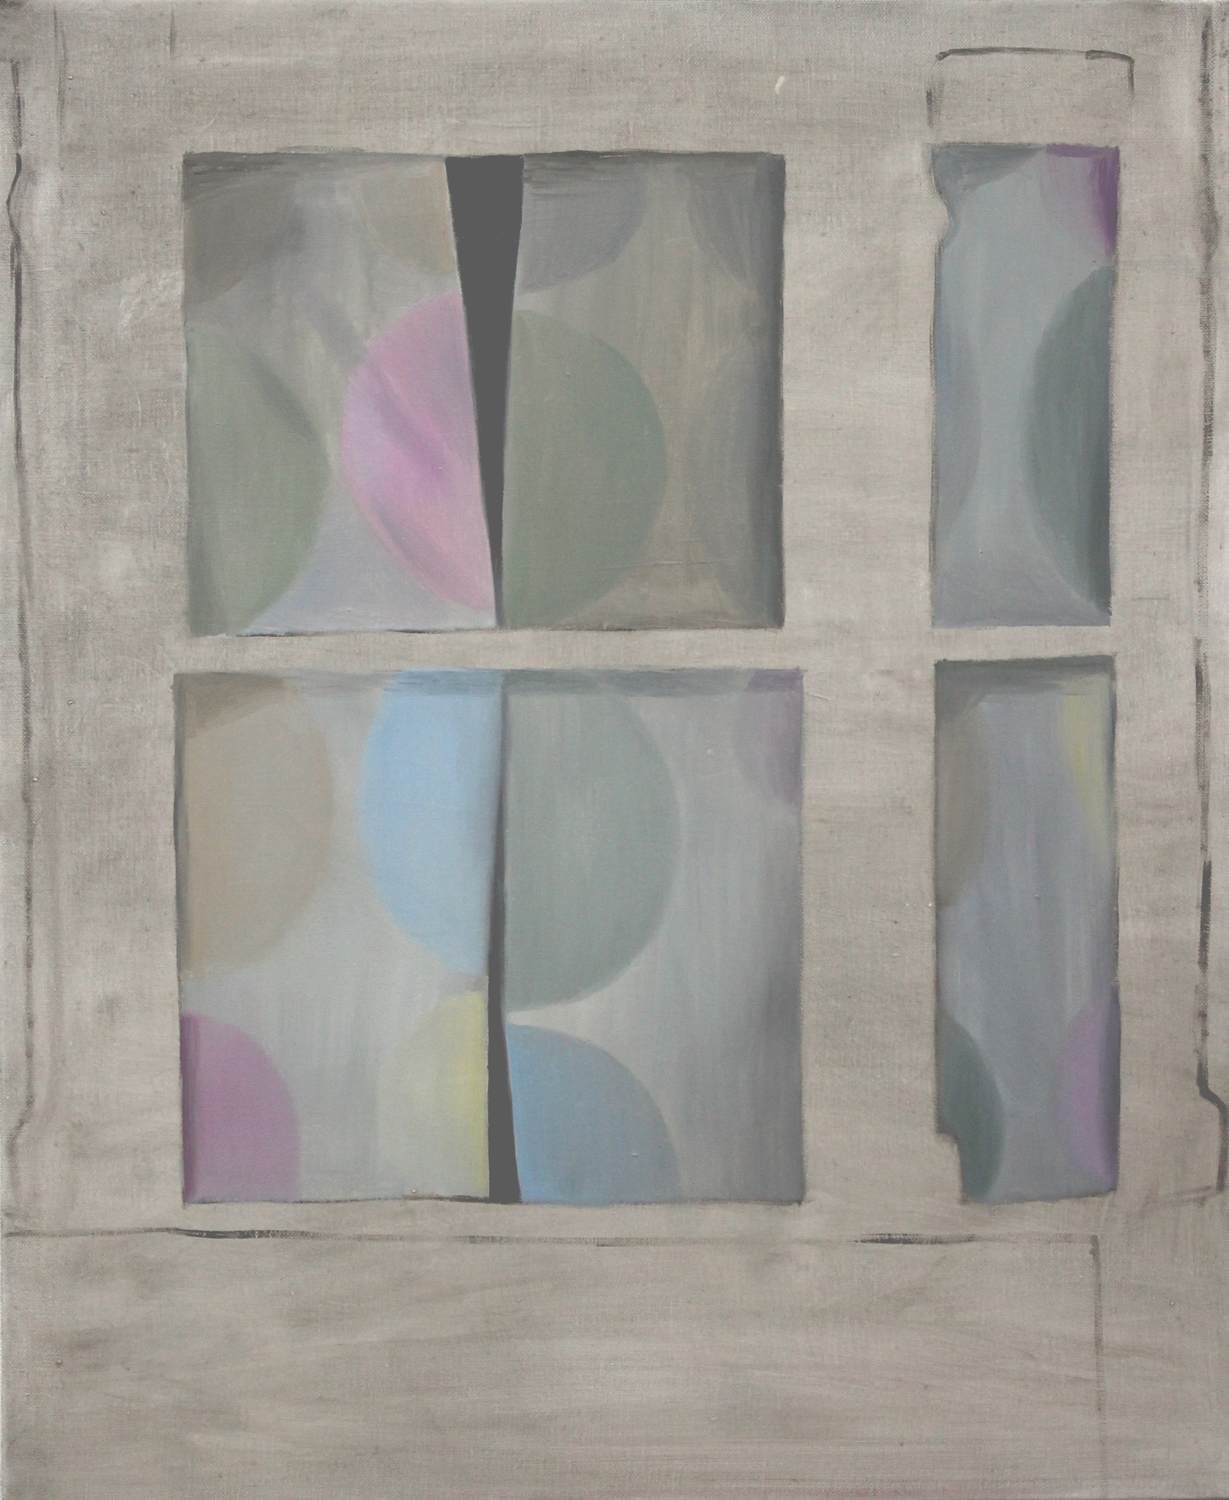   Curtain     2015, oil on canvas, 73 x 60cm     